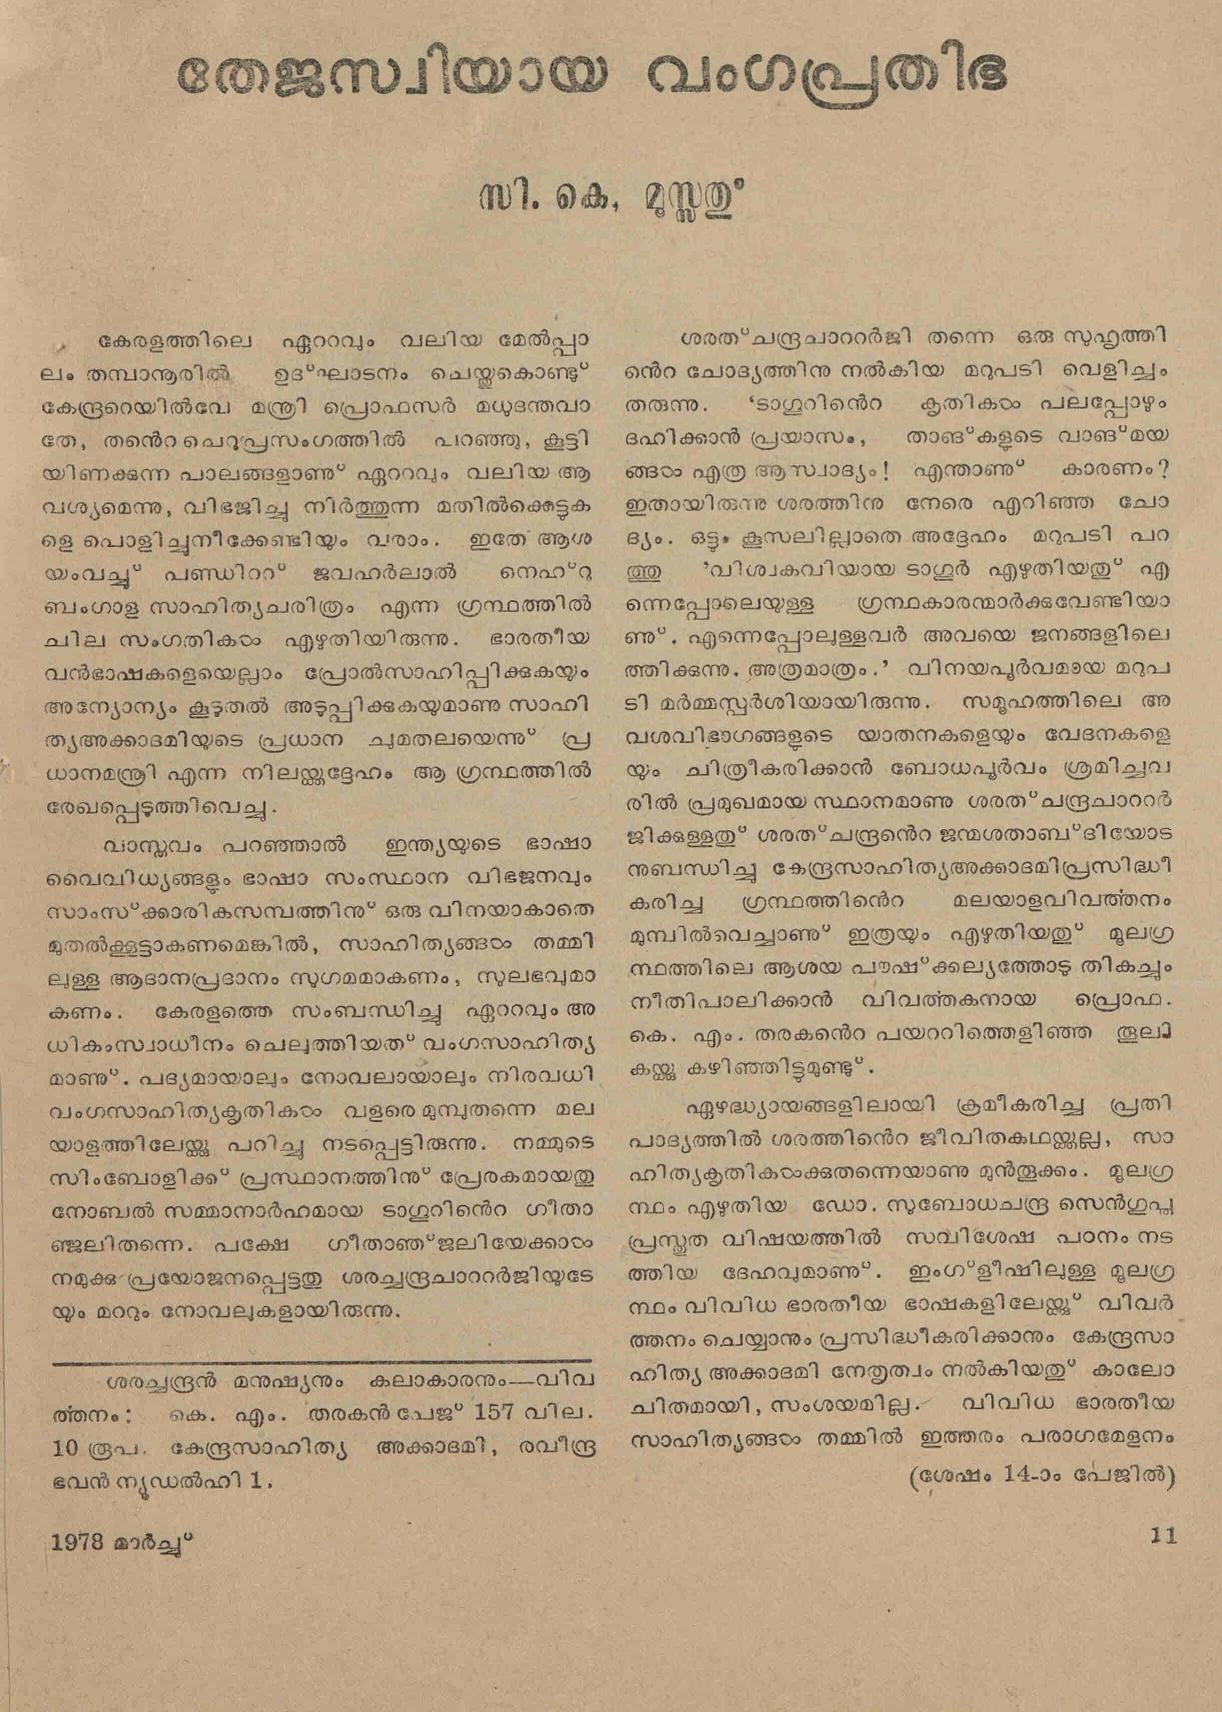 1978 - തേജസ്വിയായ വംഗപ്രതിഭ - സി. കെ. മൂസ്സത്